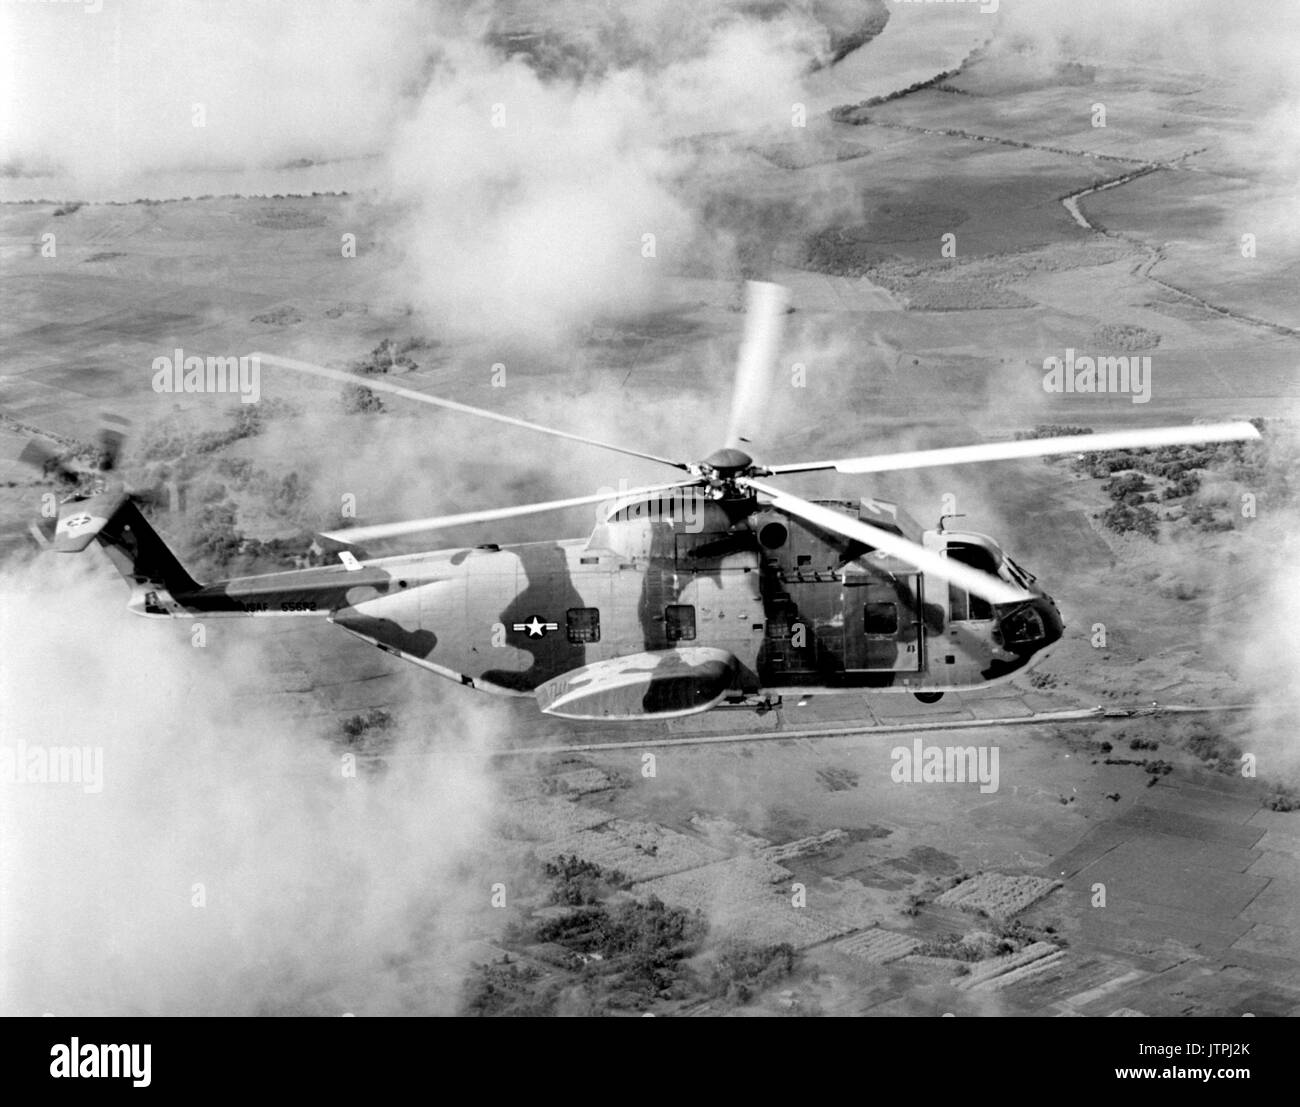 Air Force HH-3E Jolly Green Giant les hélicoptères sont utilisés pour les pilotes de sauvetage au Vietnam ou la mer de Chine du Sud. Piloté par le 3e Groupe de sauvetage et de récupération de l'aérospatiale, l'embarcation de sauvetage cruises à des vitesses allant jusqu'à 155 mph et est capable de ravitaillement en vol. Banque D'Images